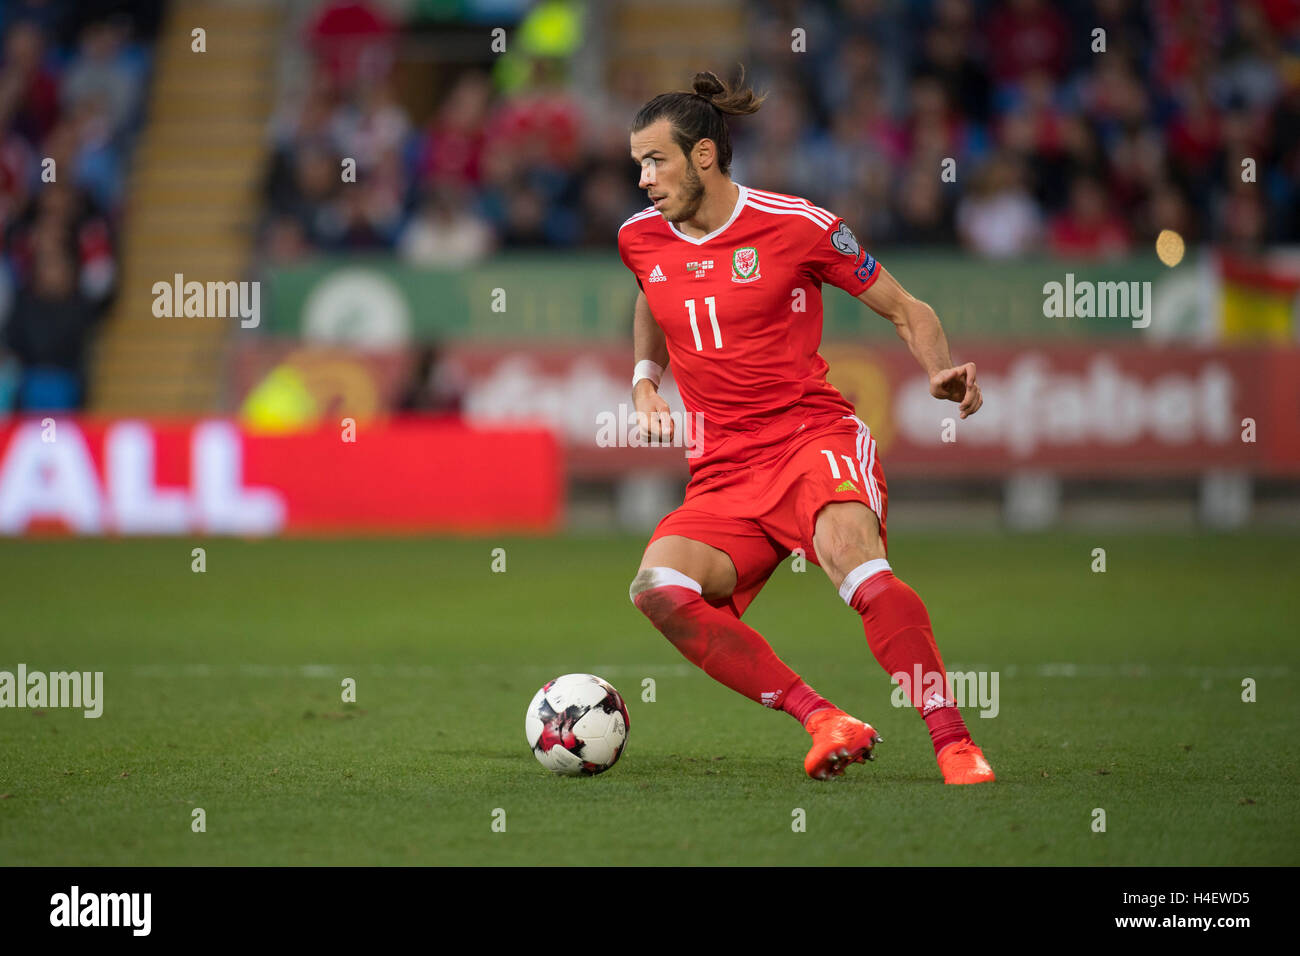 Gareth Bale für Wales-Fußball-Nationalmannschaft im Einsatz Stockfotografie  - Alamy